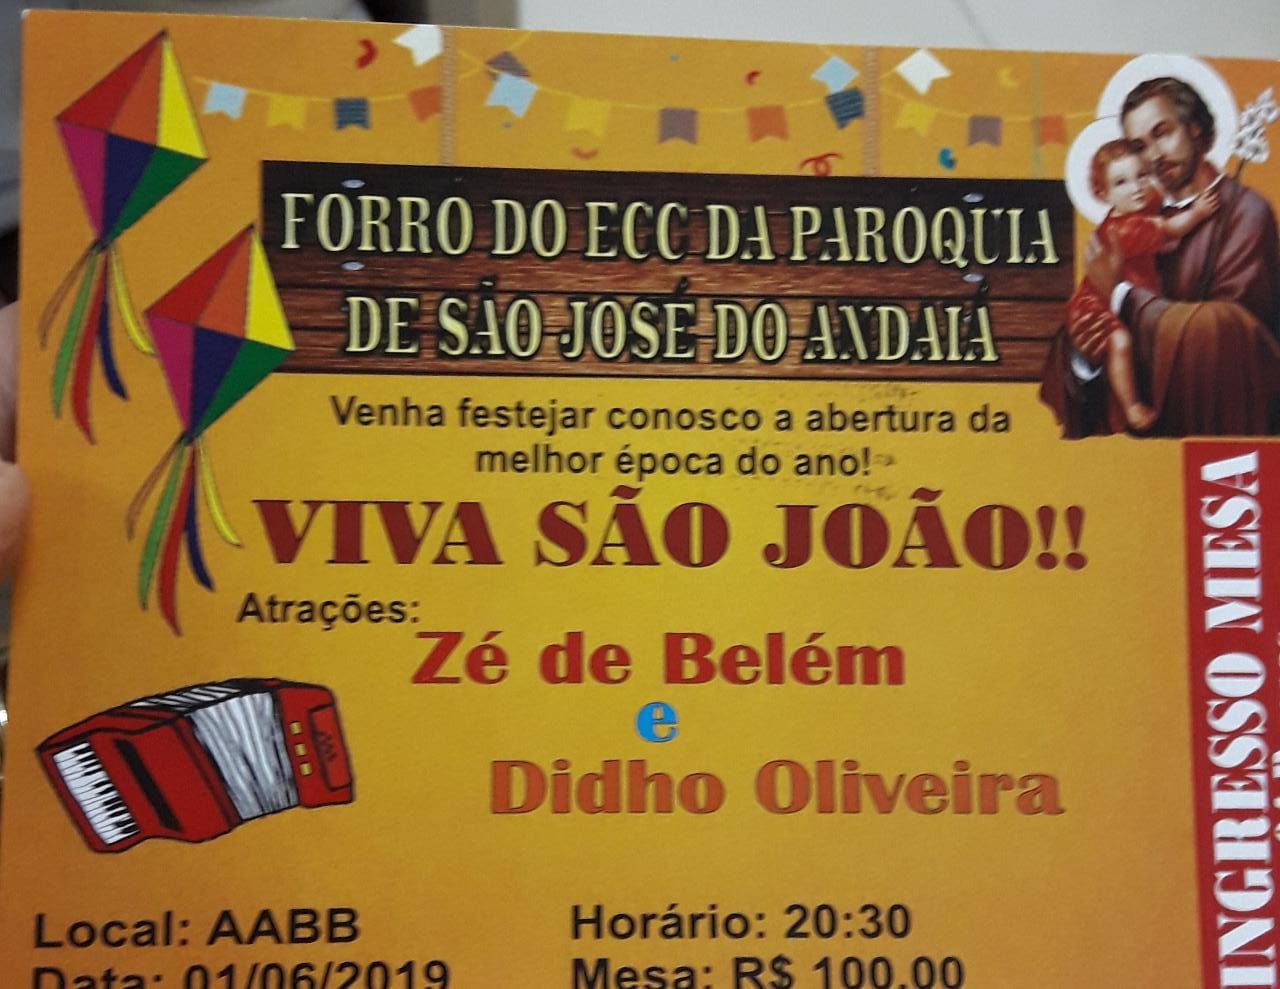 Paróquia de São José do Andaiá promove Forró do ECC no dia 1º de junho, na AABB